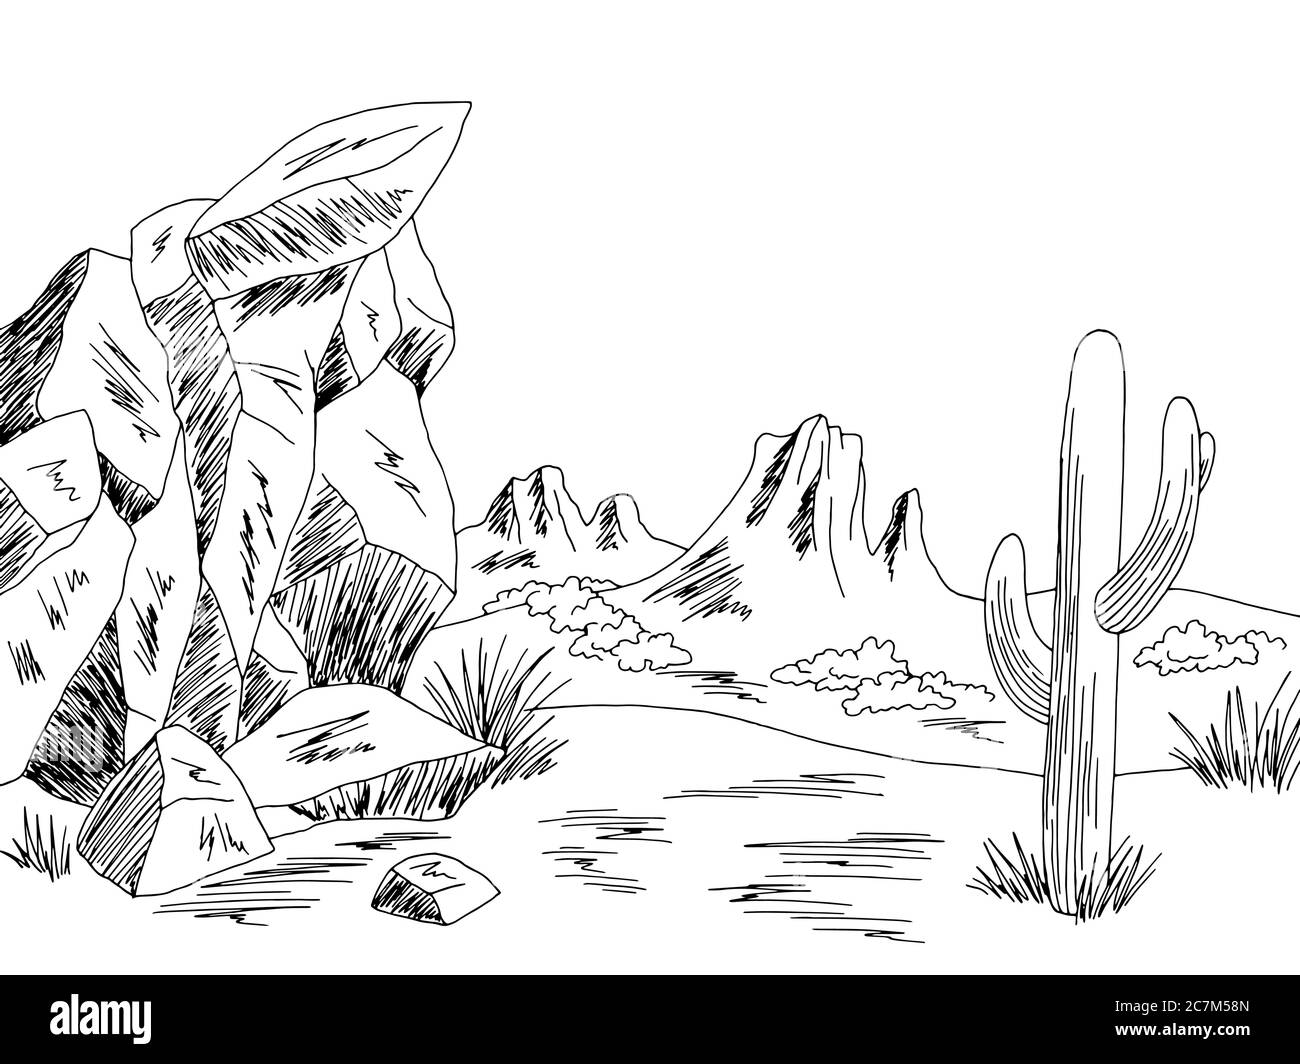 Prairie Grafik schwarz weiß wild Westen Wüste Landschaft Skizze Illustration Vektor Stock Vektor